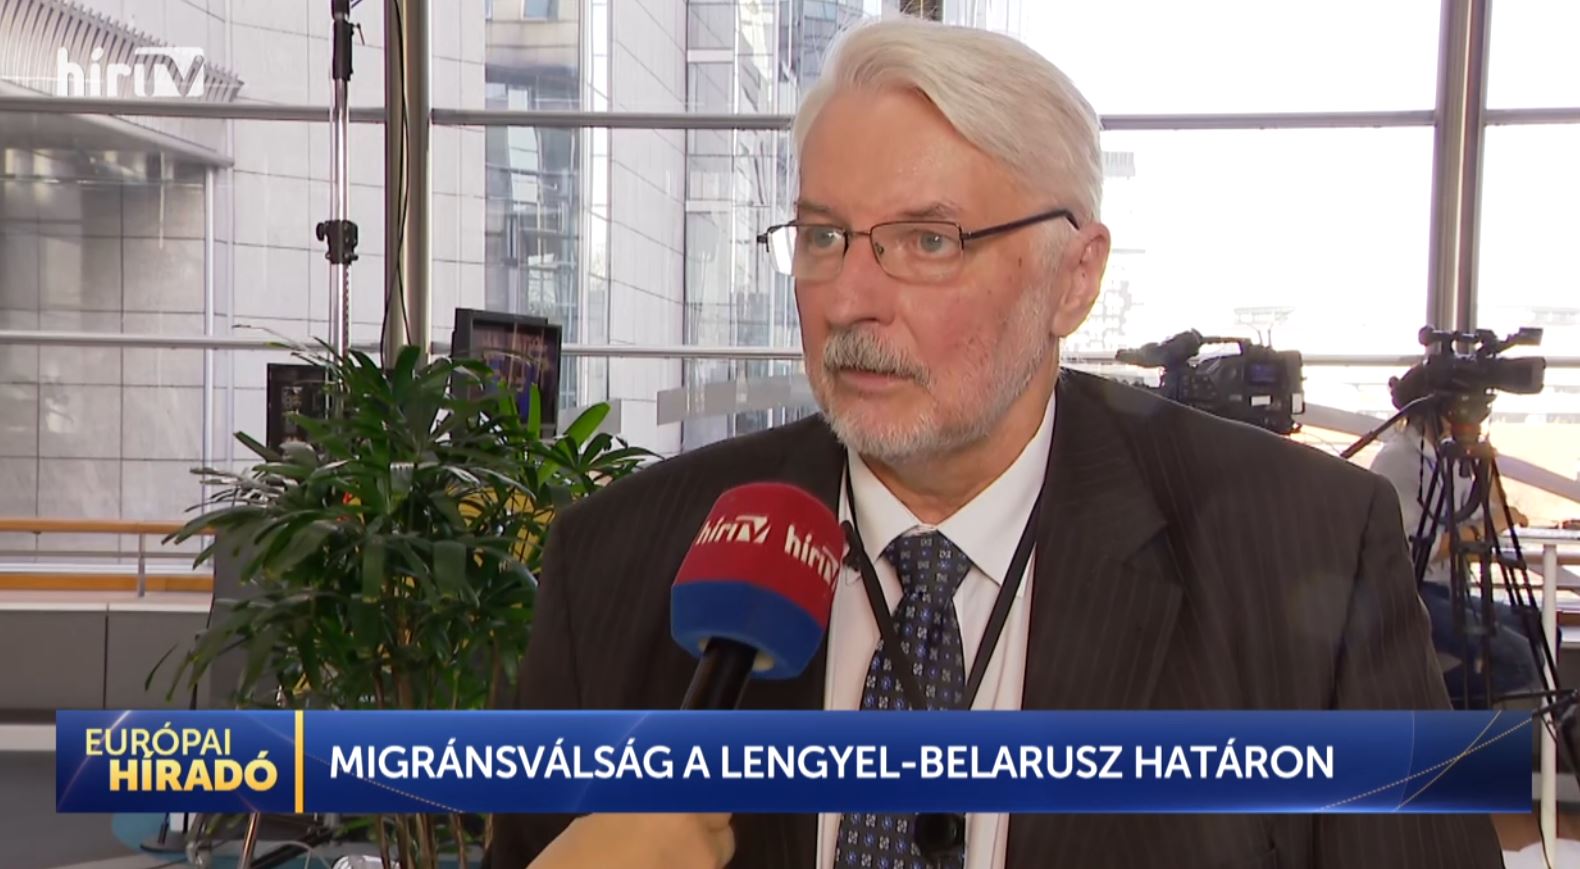 Európai híradó: Migránsválság a lengyel-belarusz határon!